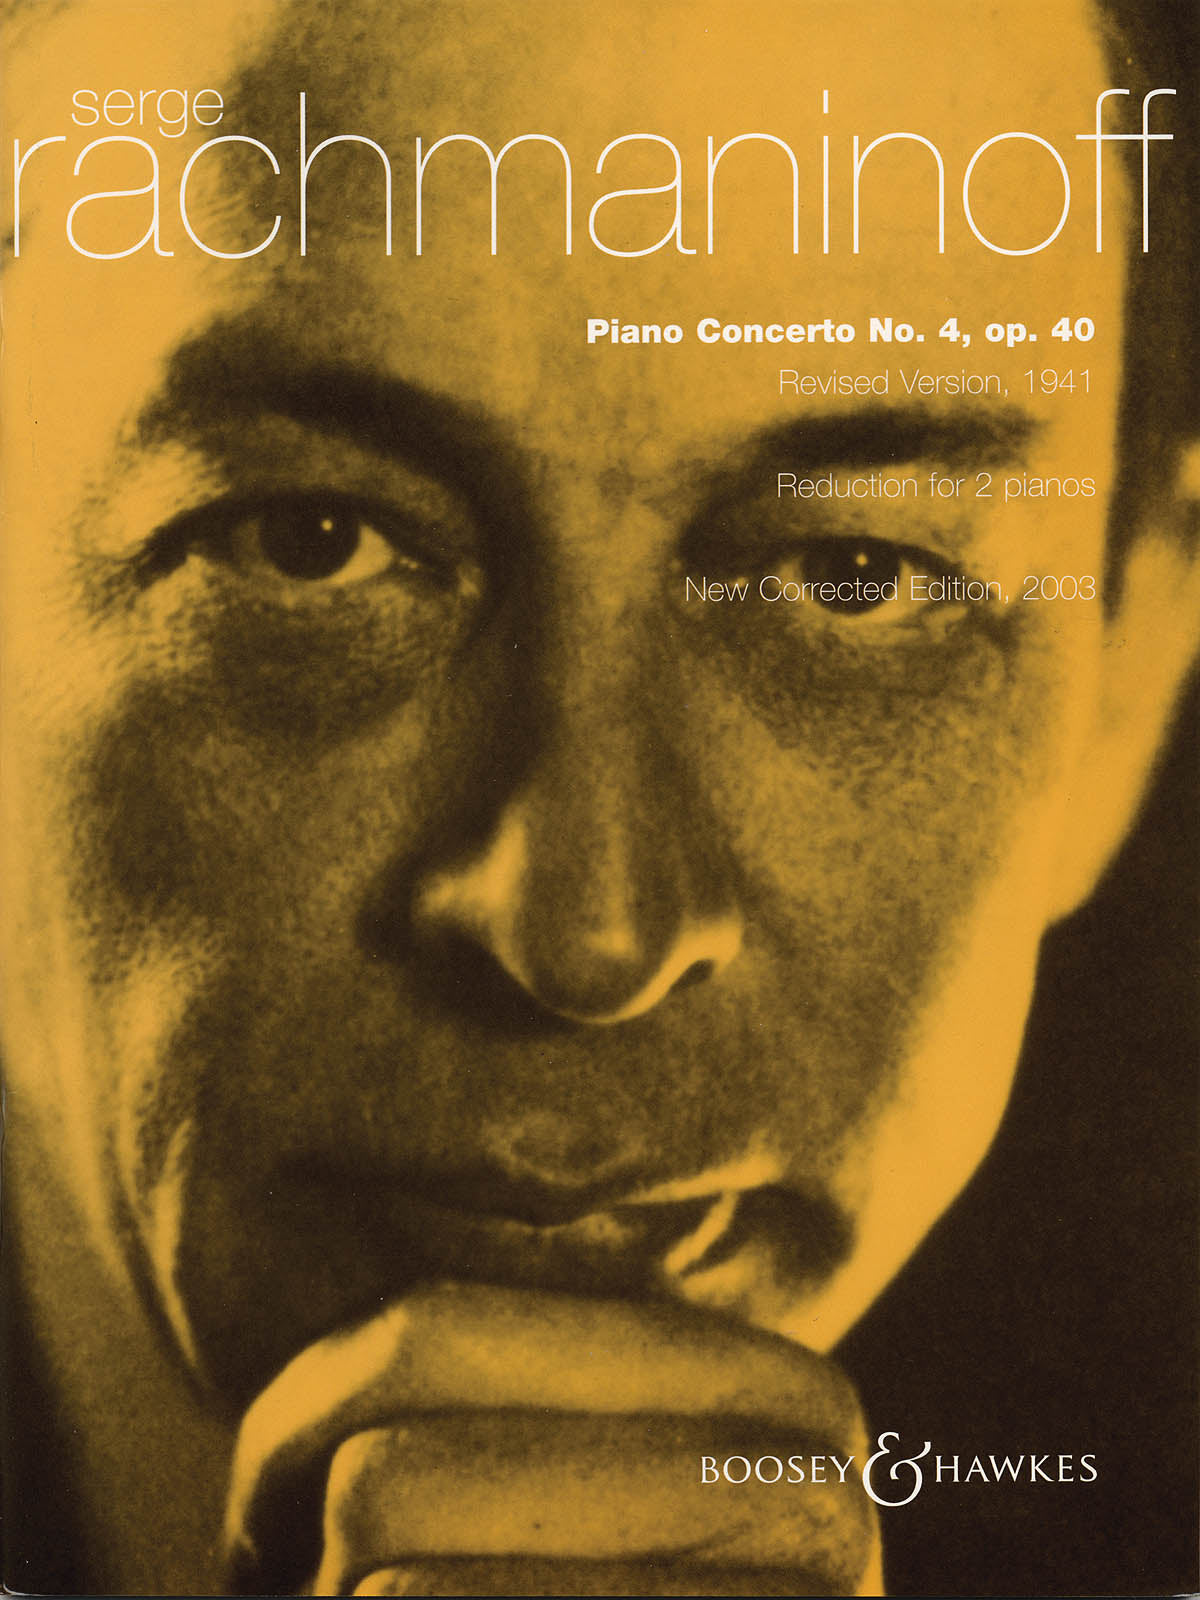 Rachmaninoff: Piano Concerto No. 4, Op. 40